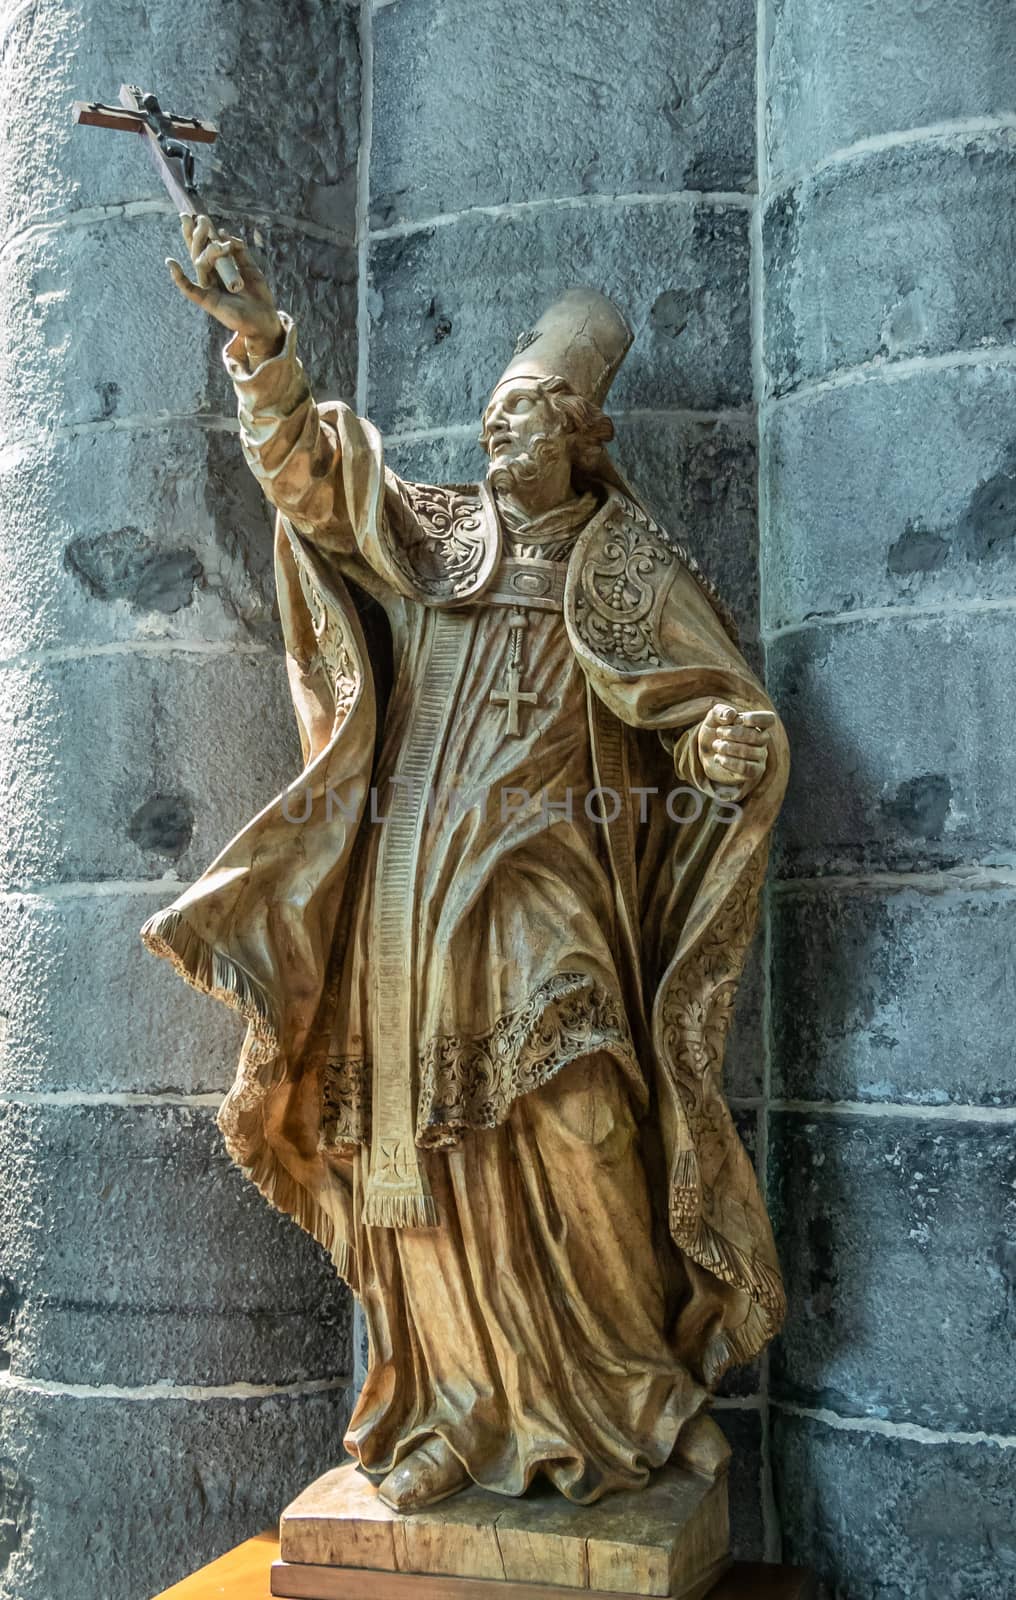 Dinant, Belgium - June 26, 2019: Inside Collégiale Notre Dame de Dinant Church. Gold painted stone statue of Belgian medieval Saint Perpėte against pillar.